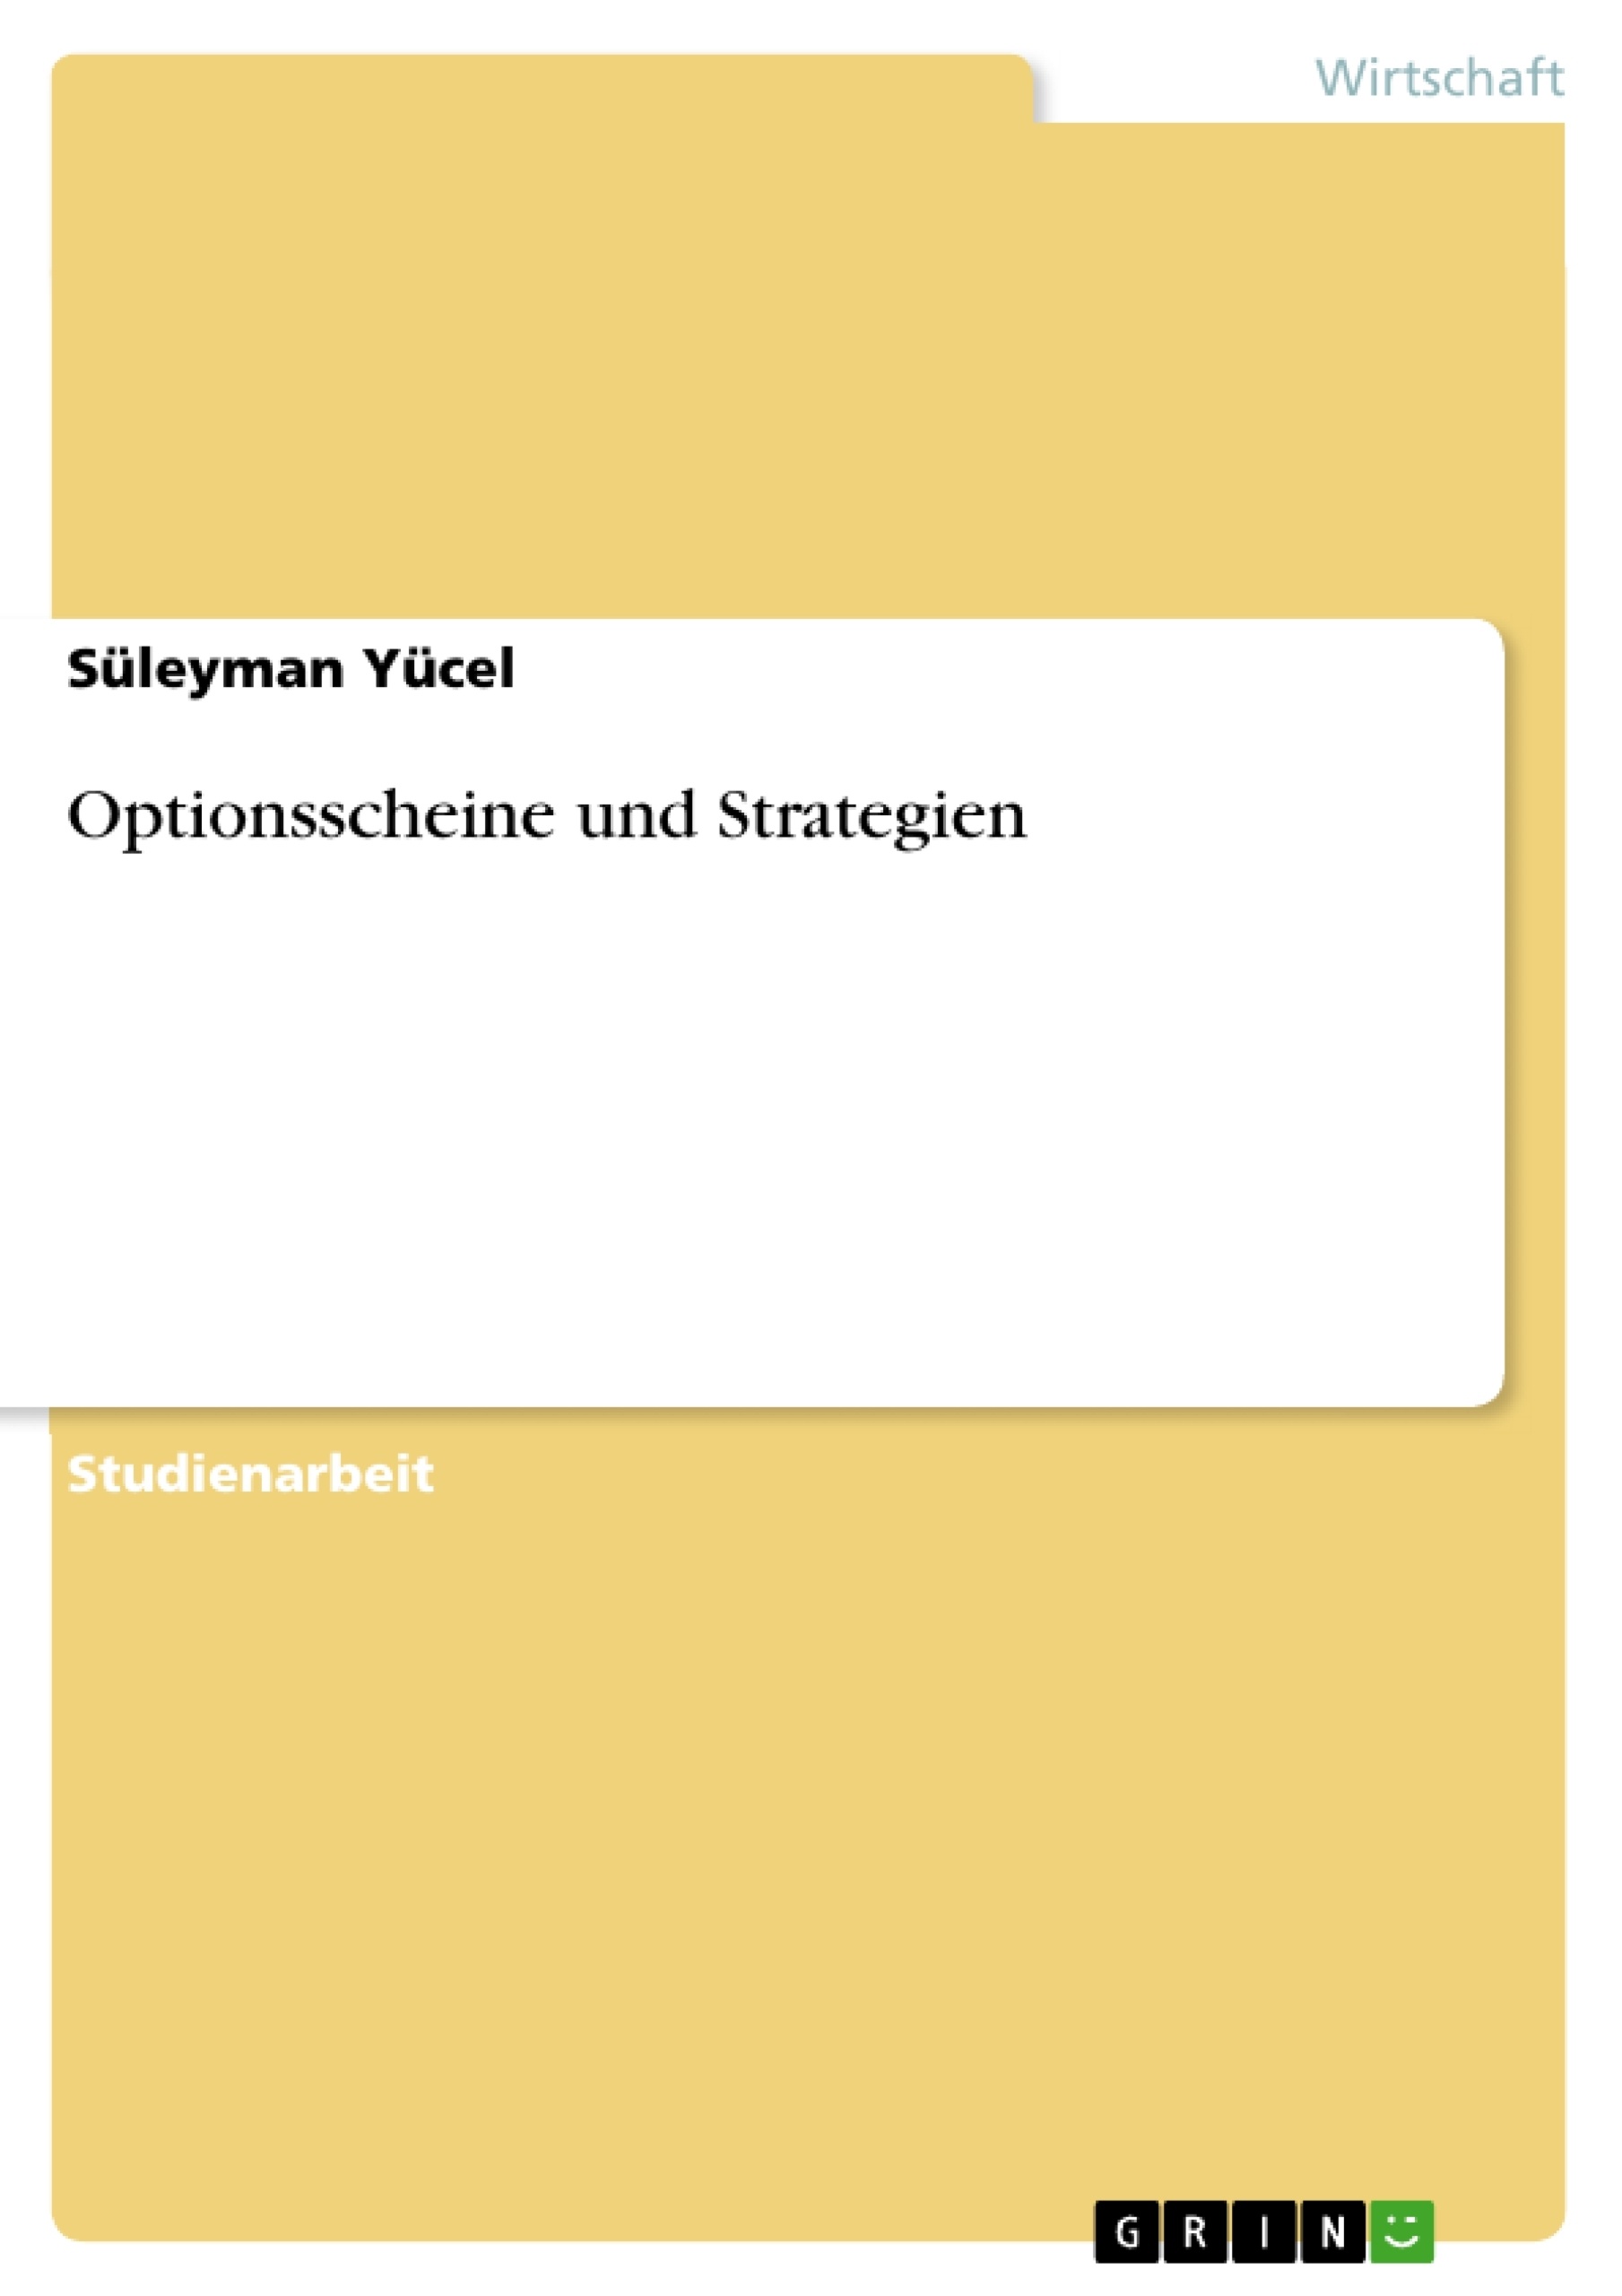 Título: Optionsscheine und Strategien